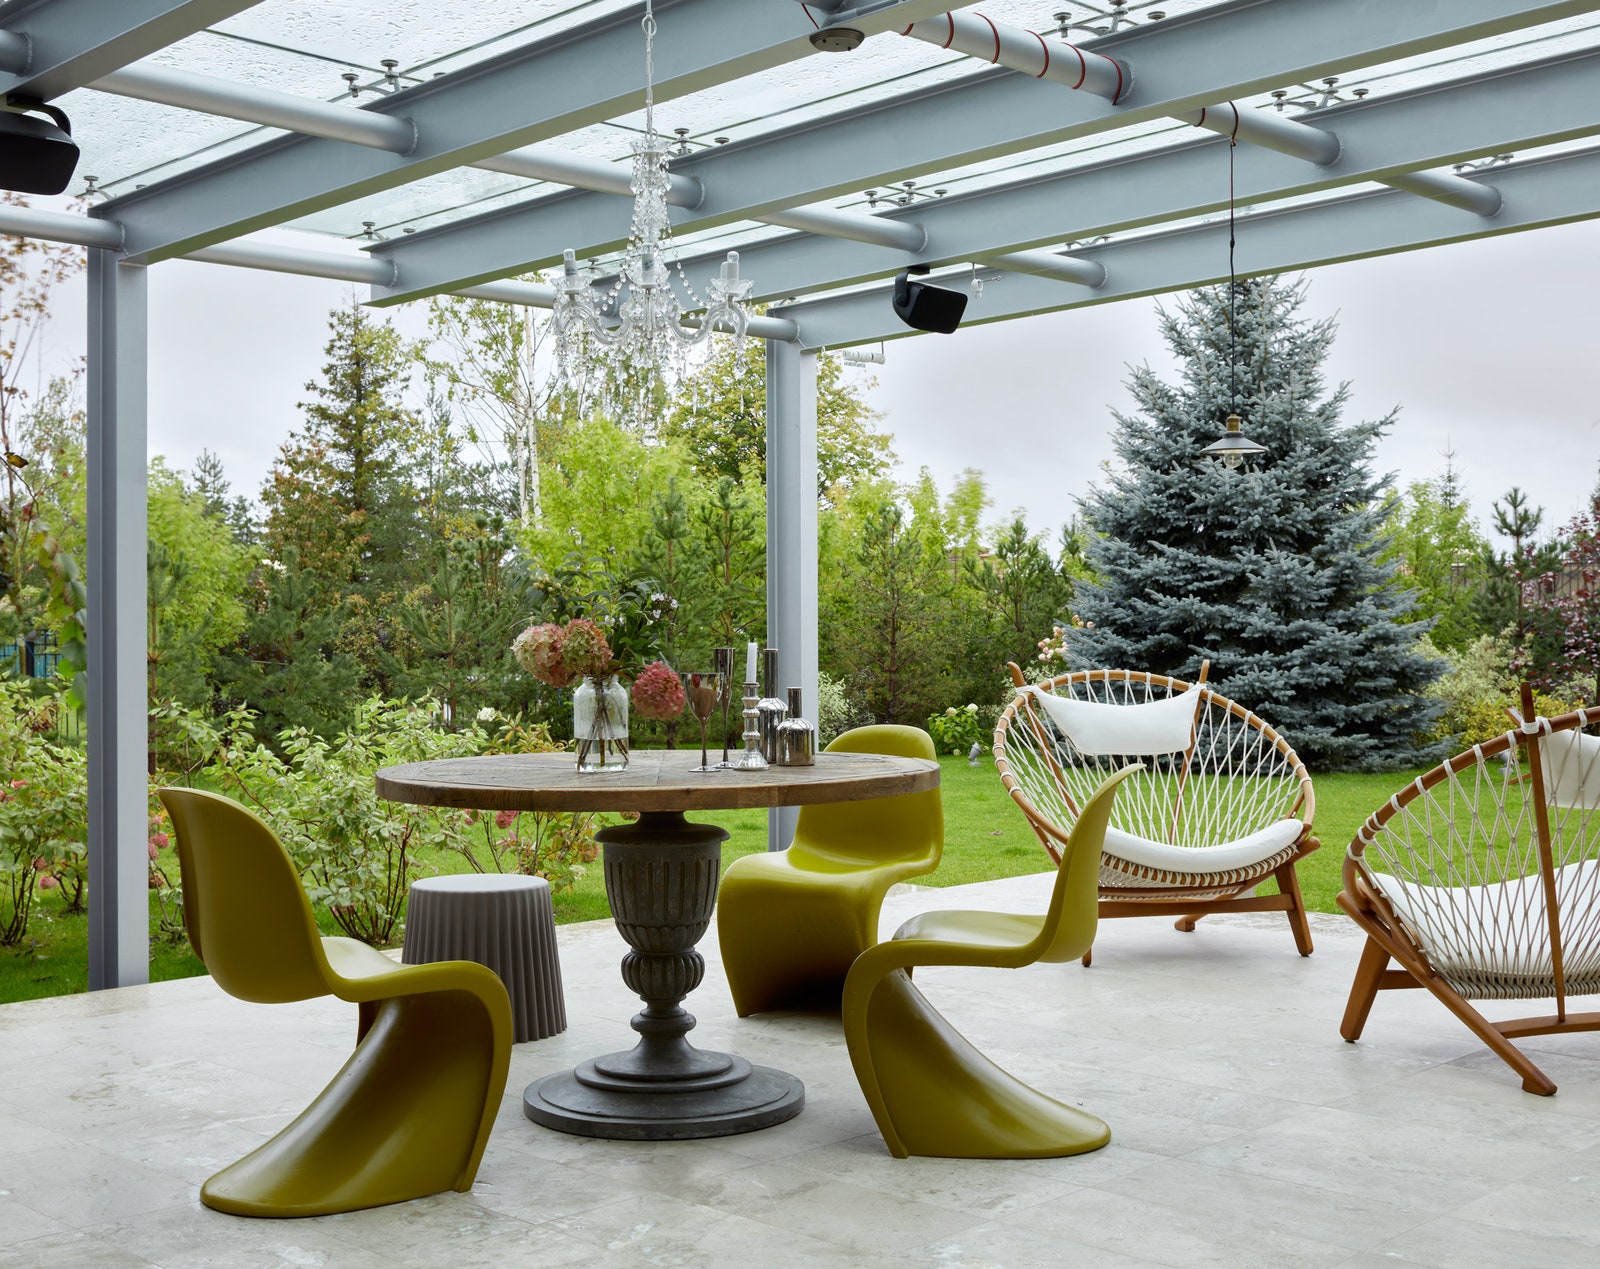 Как оформить столовую зону на открытой террасе 10 примеров от дизайнеров